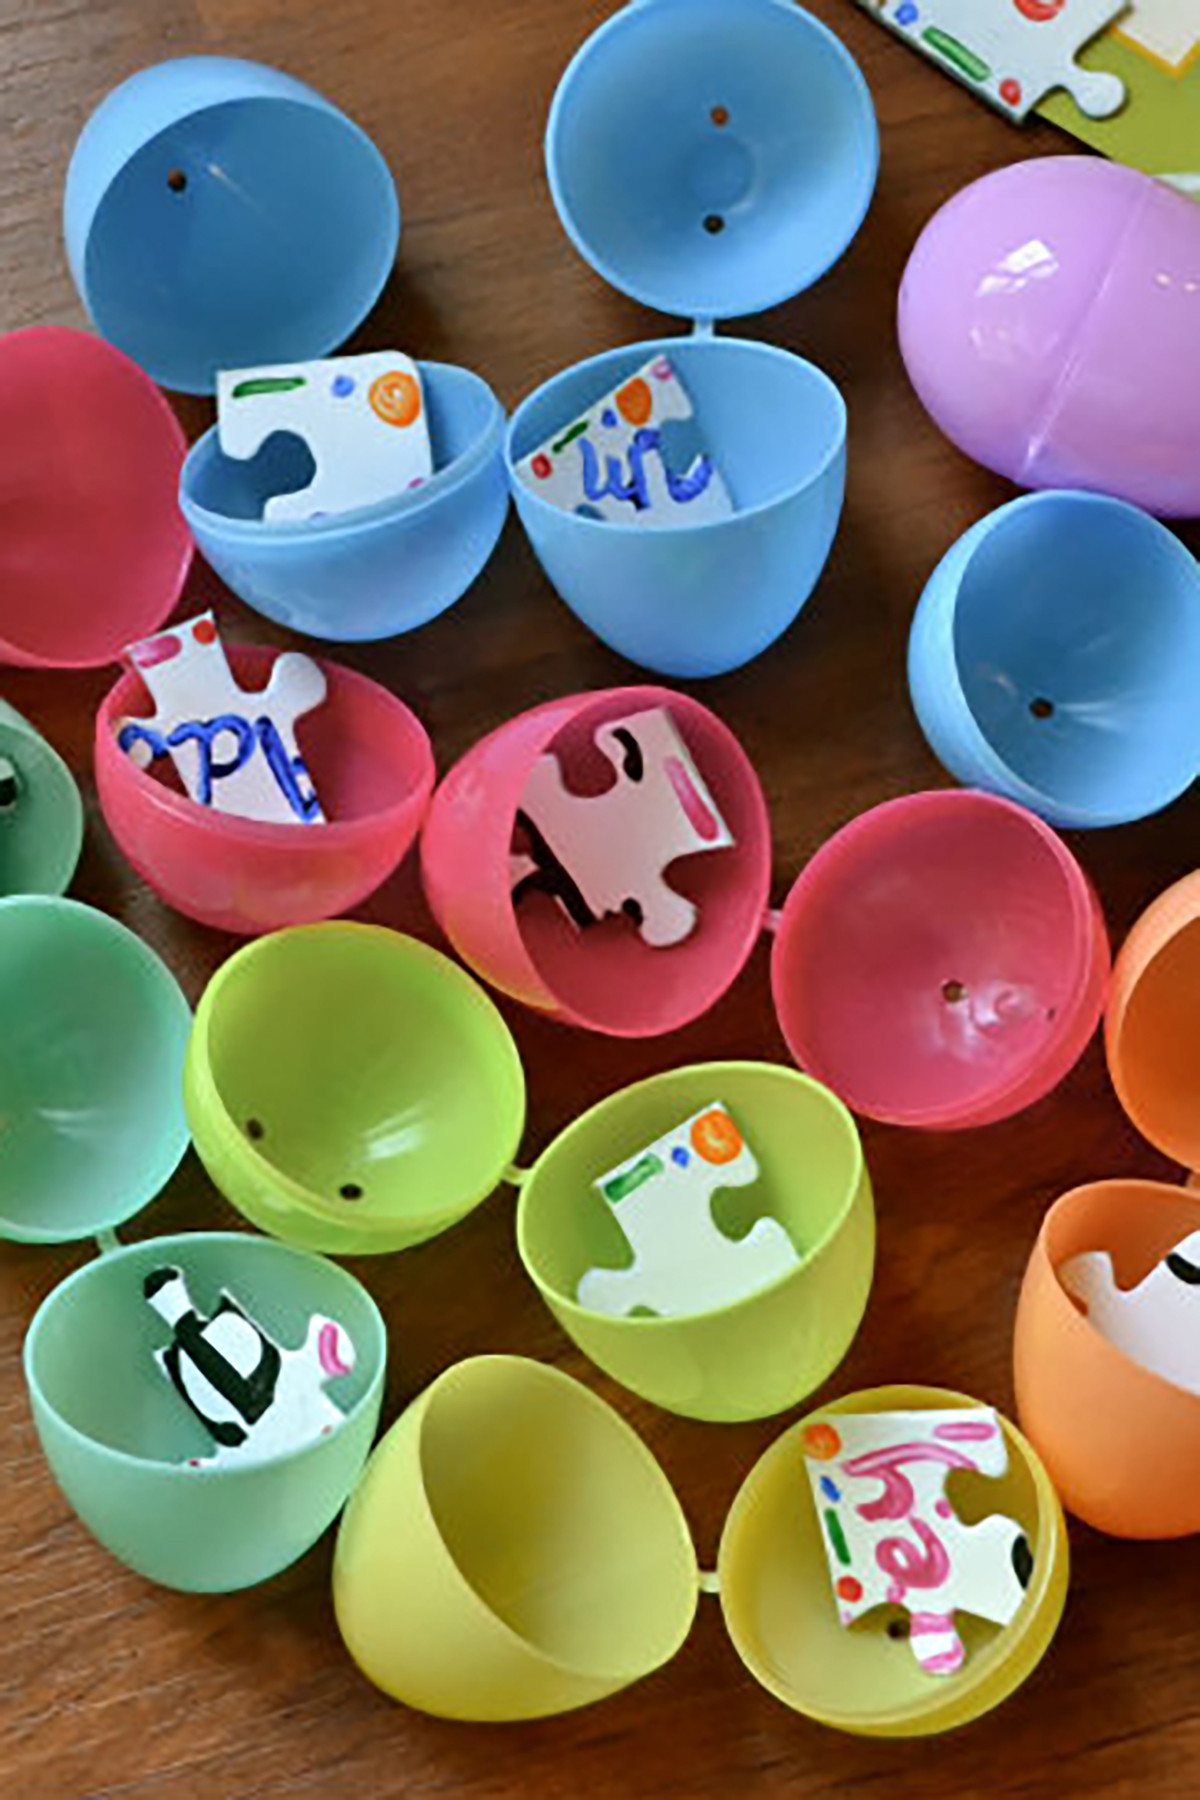 Easter Egg Hunt Ideas For Kids
 10 Creative Easter Egg Hunt Ideas For Kids Easter Egg